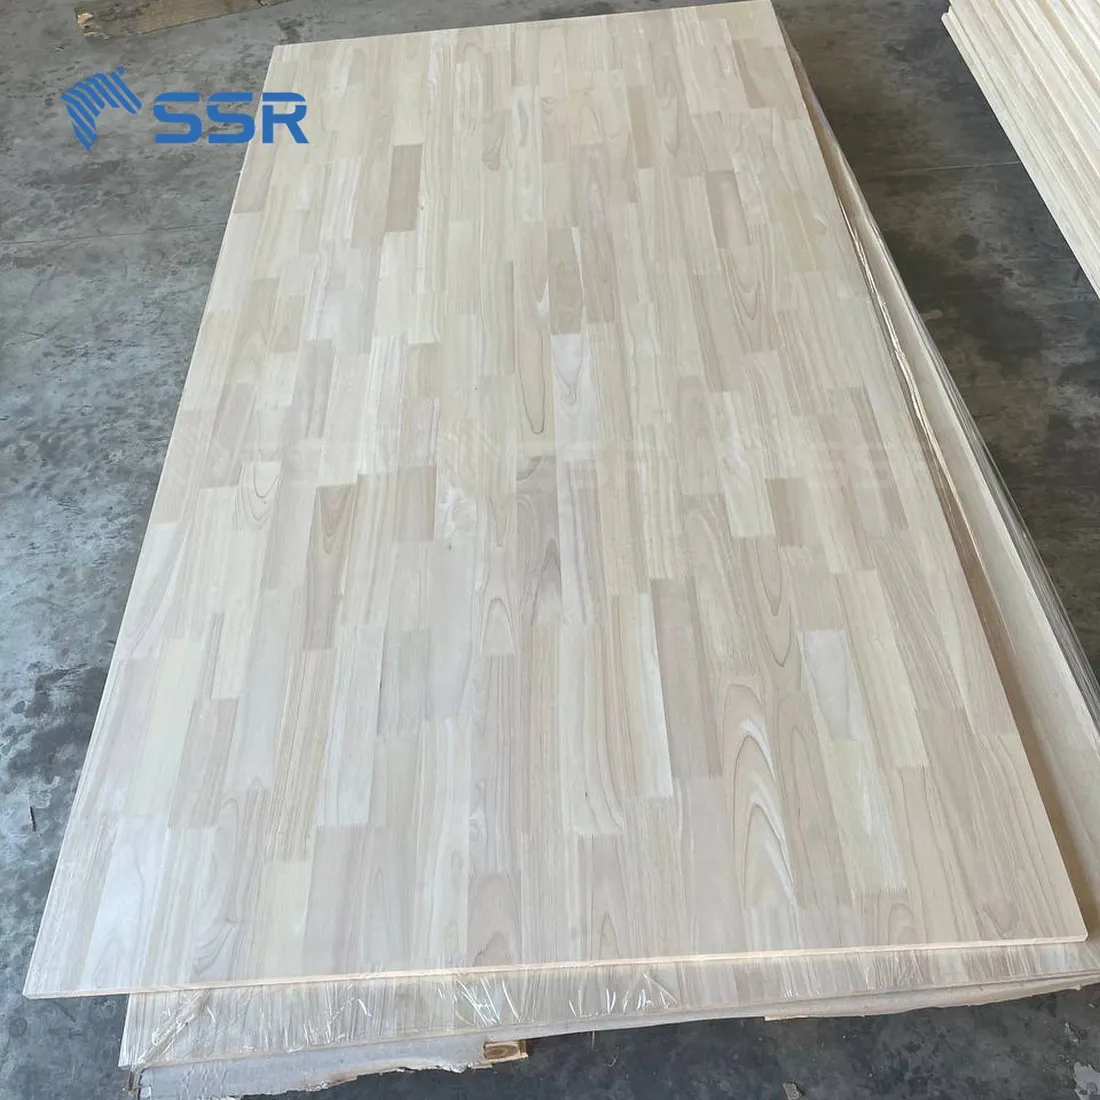 SSR VINA - Rubber Wood Finger Joint Board - 2440x1220 mm Rubberwood finger joint board laminated wood board